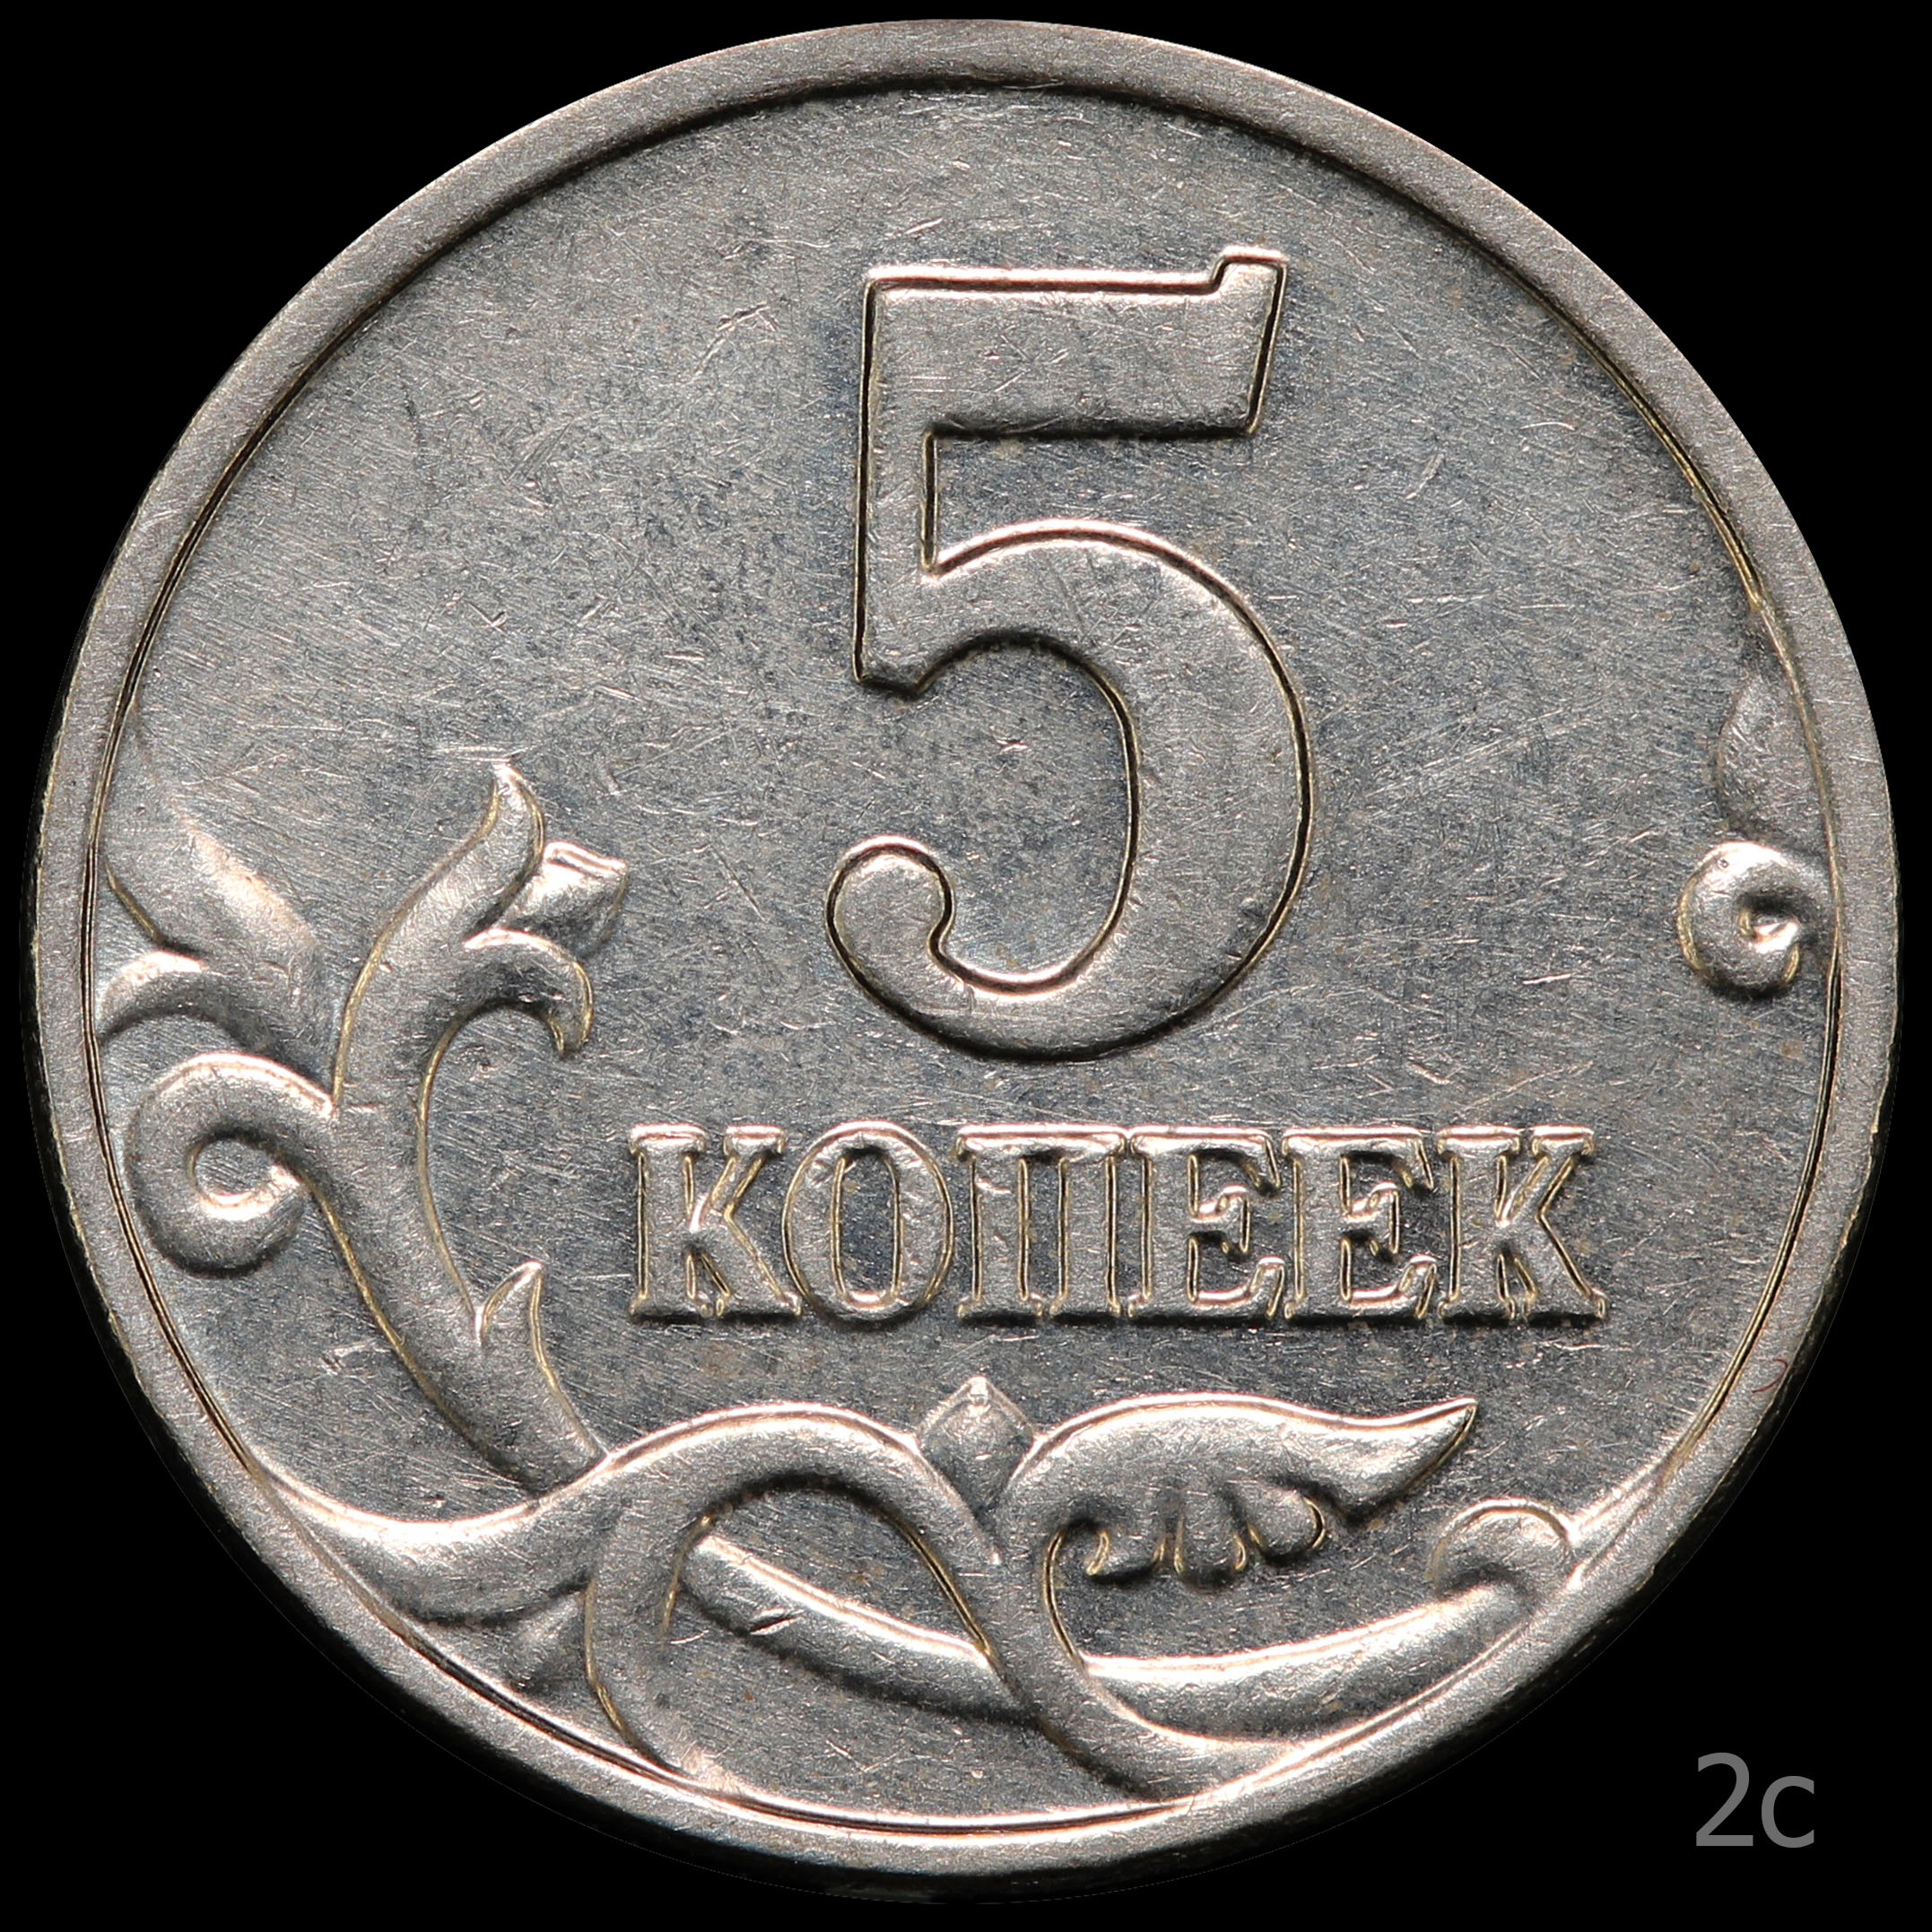 5 Копеек 2003. 5 Копеек 2003 обычная. Штемпель для монет. 5 копеек сканворд